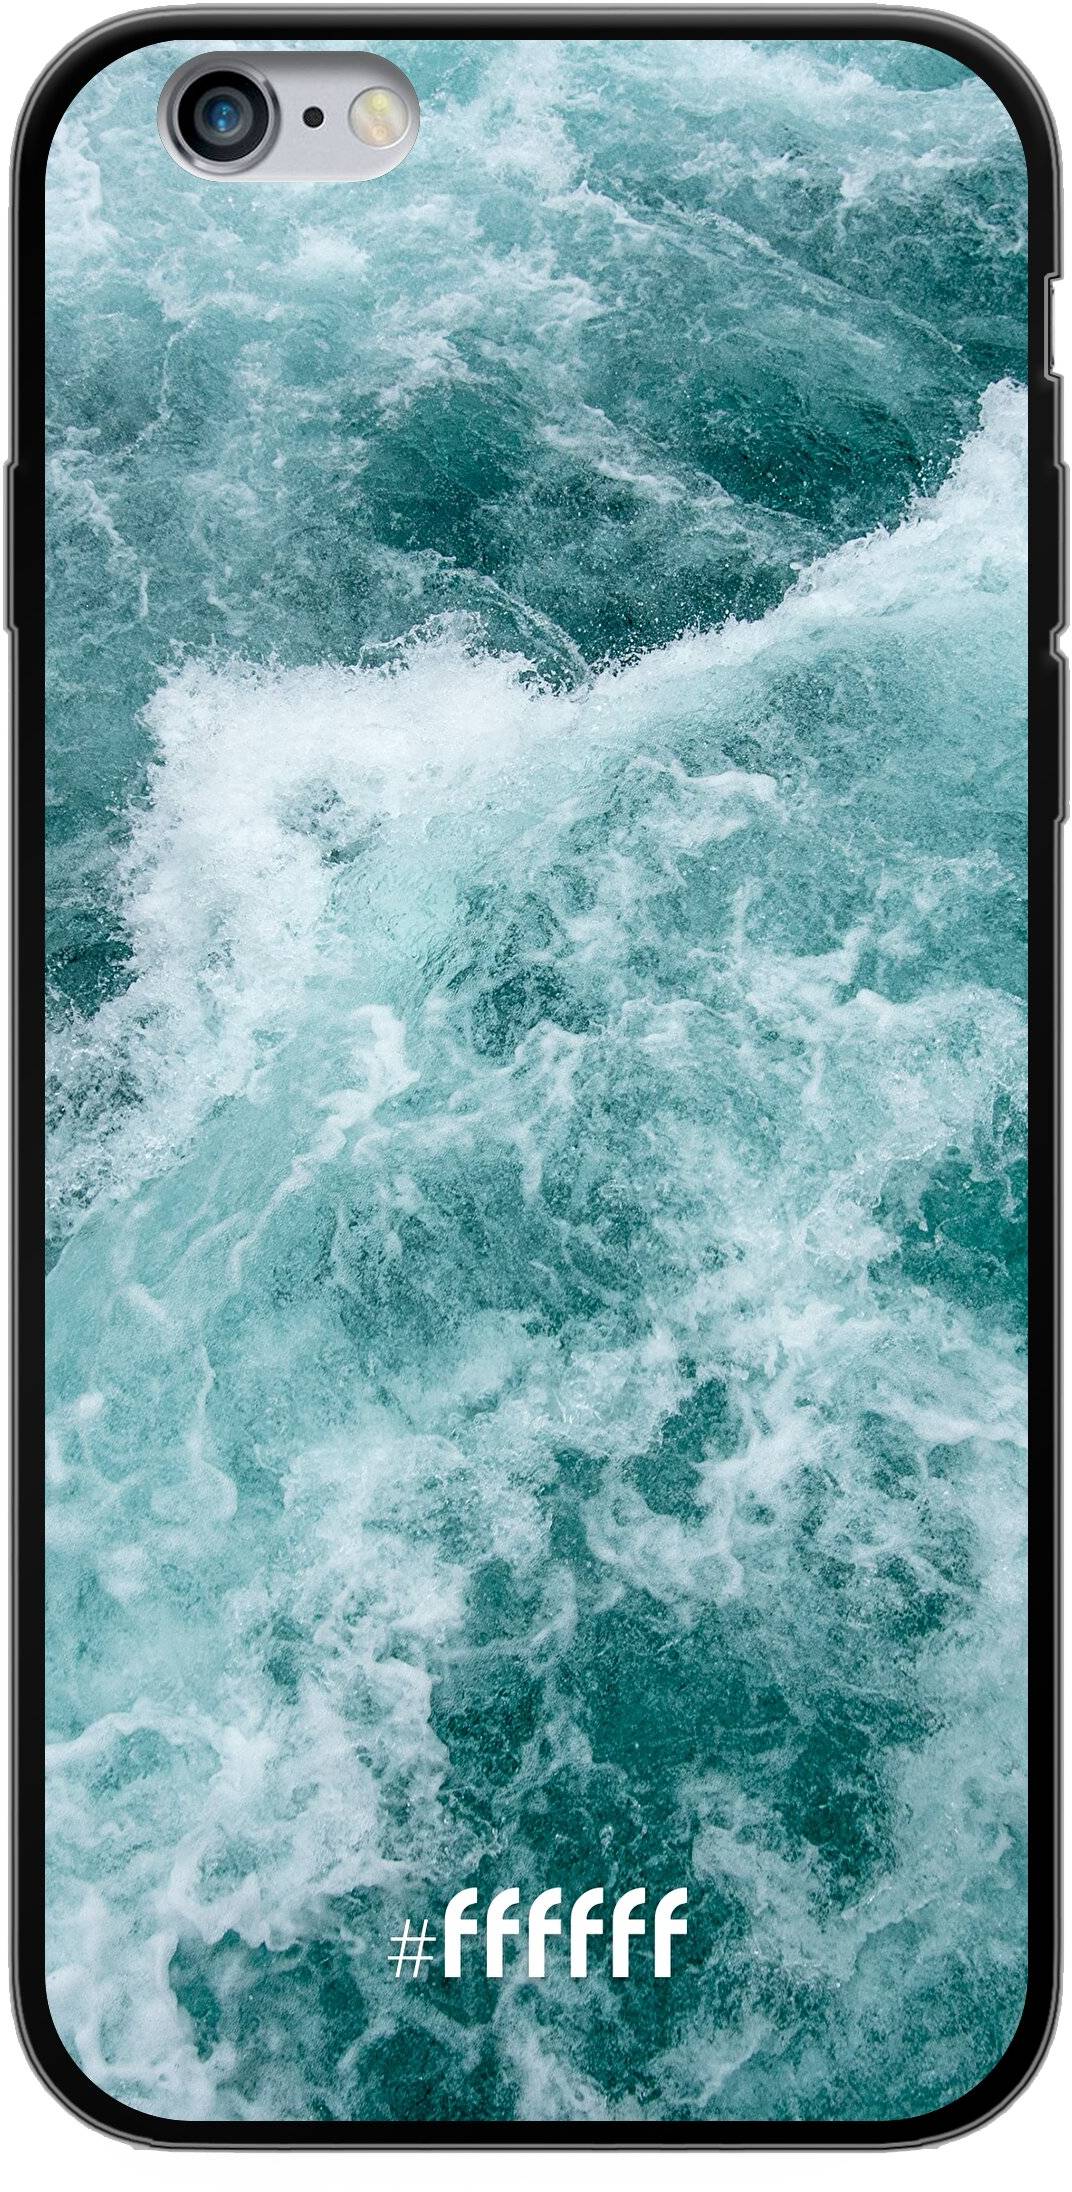 Whitecap Waves iPhone 6s